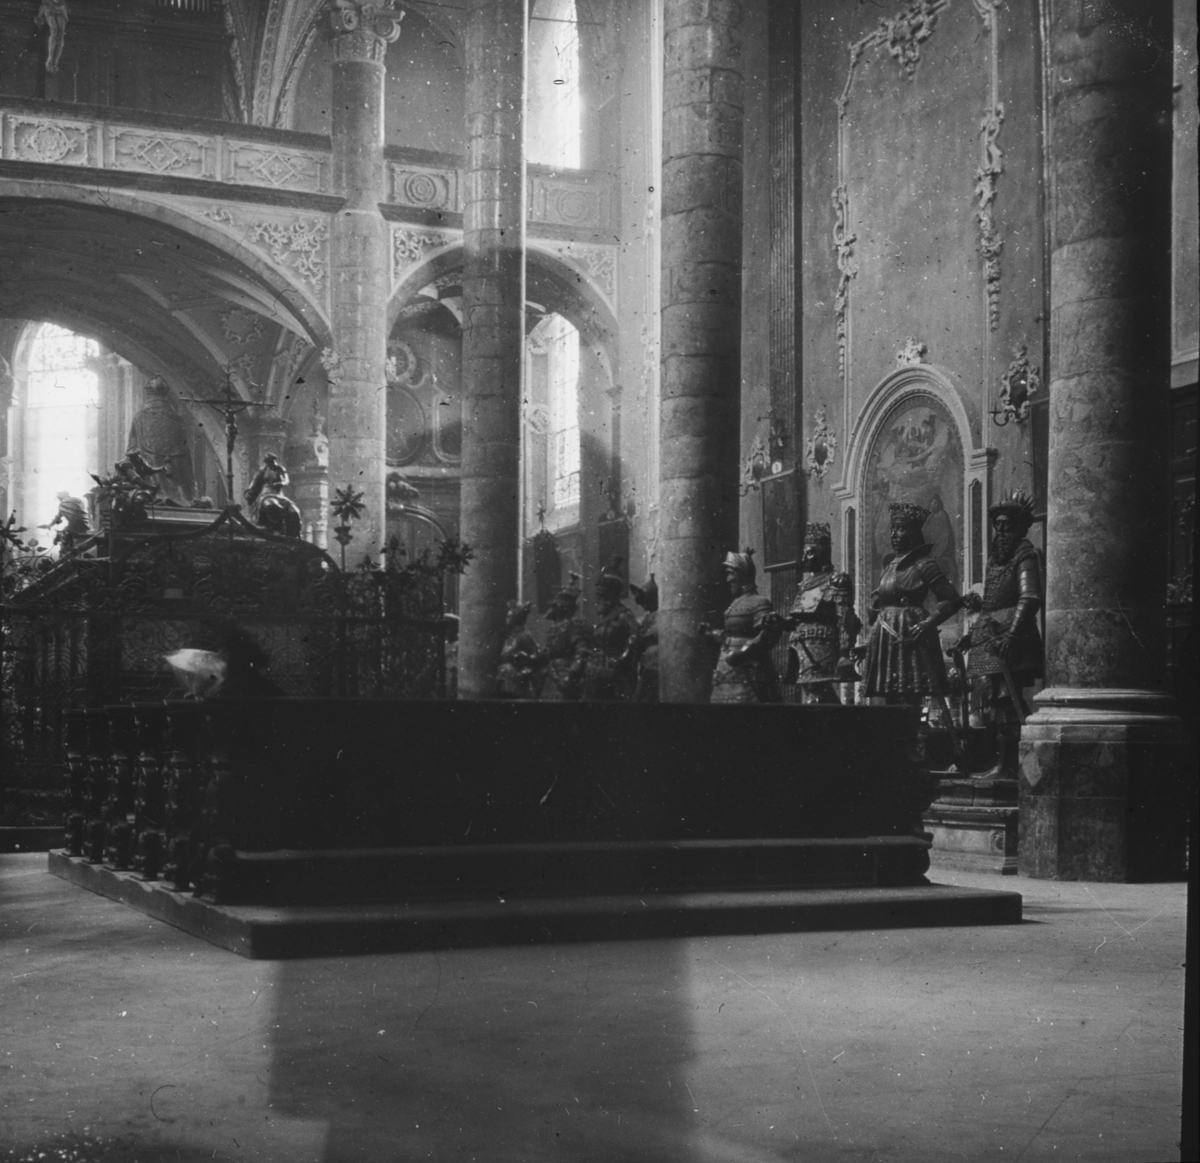 Skioptikonbild med motiv från Innsbruck, möjligen interiör av katedralen.
Bilden har förvarats i kartong märkt: Höstresan 1909. Innsbruck. Sterzing. Cortina. No:14